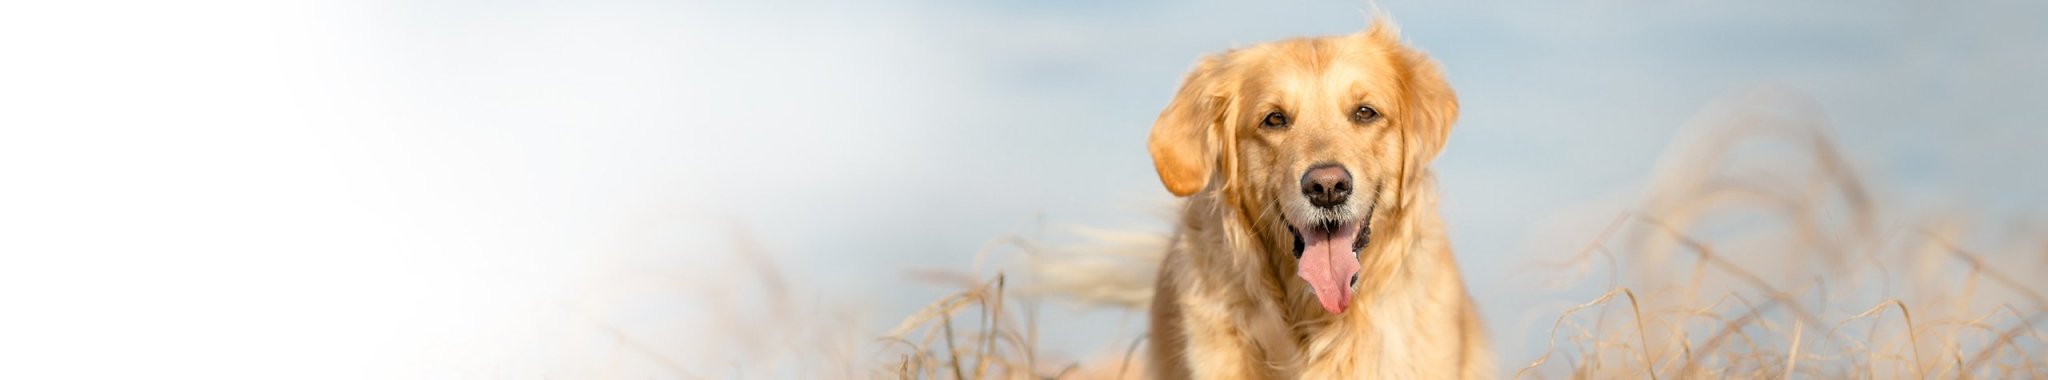 Valikoidut proteiinit koiralle - Karitsa | Vet Concept